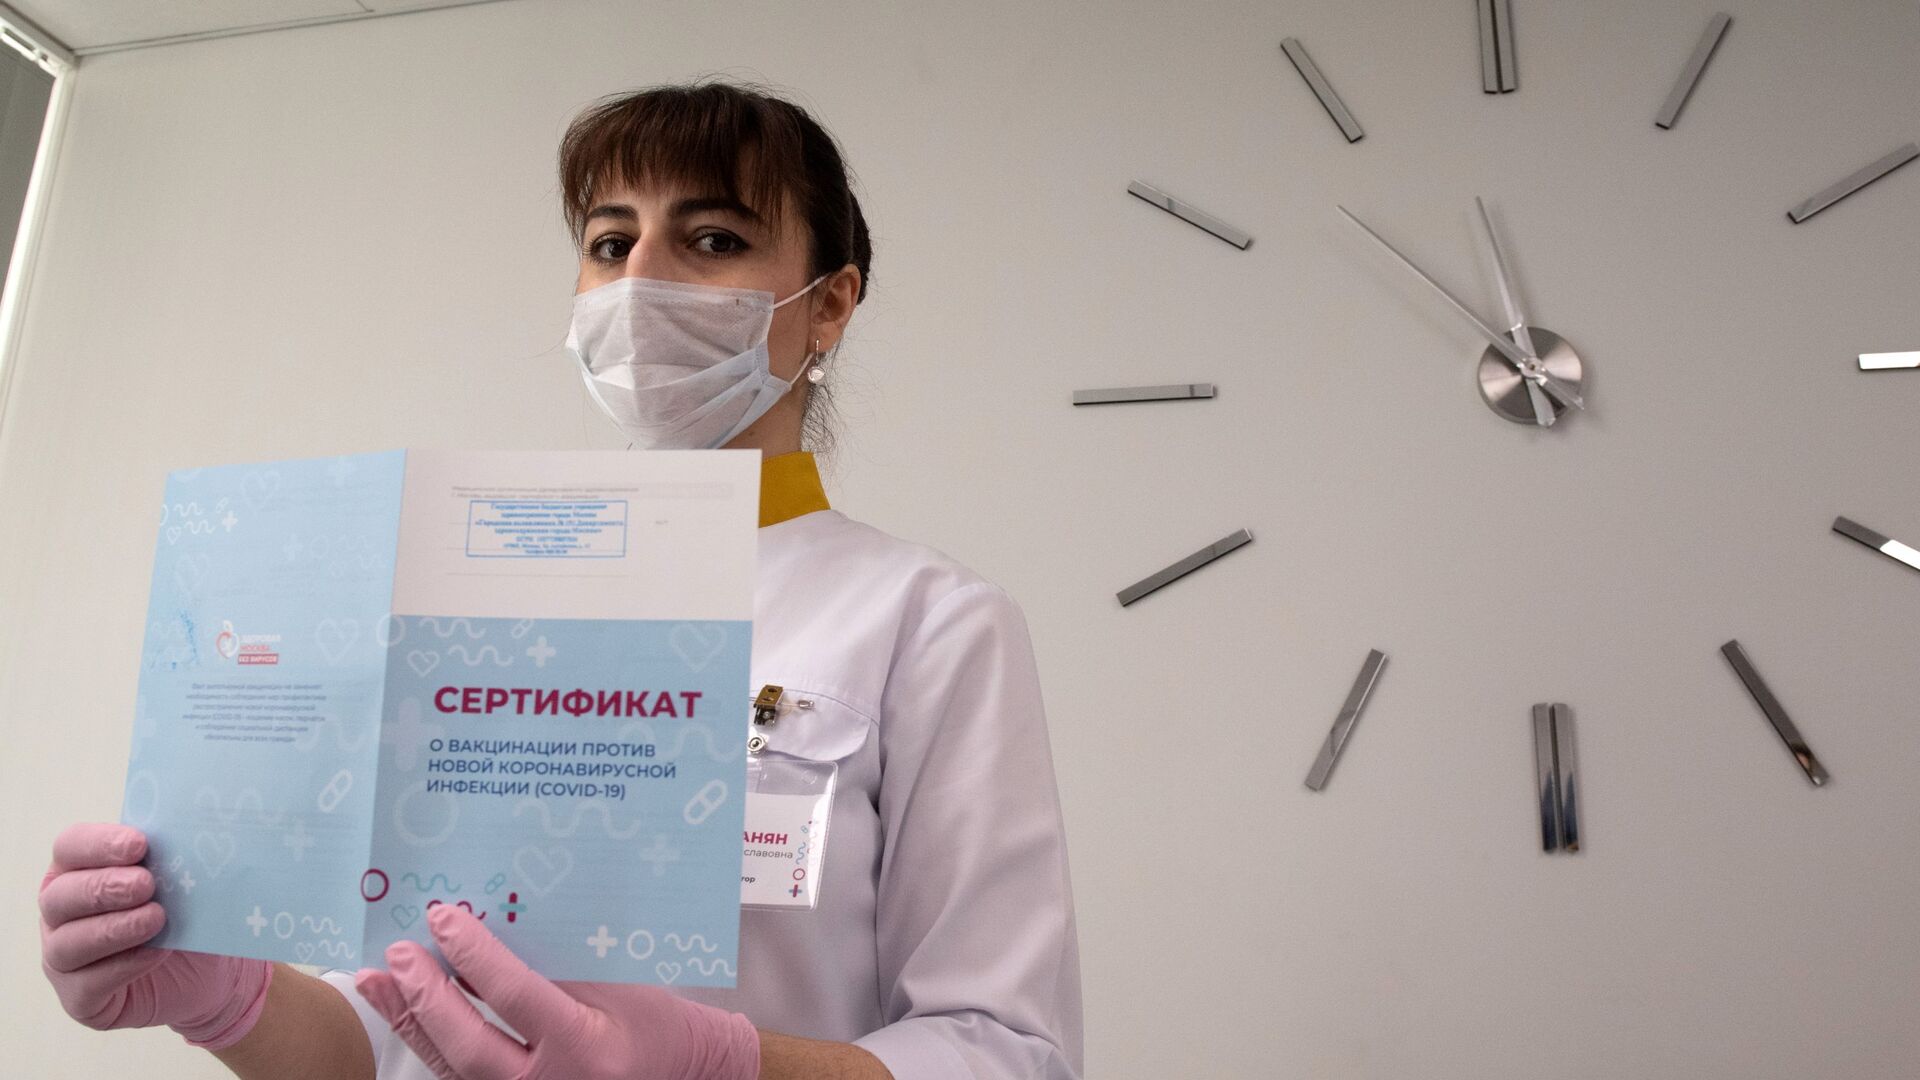 Медработник демонстрирует Сертификат о вакцинации от новой коронавируссной инфекции COVID-19 в Москве - Sputnik Таджикистан, 1920, 16.07.2021